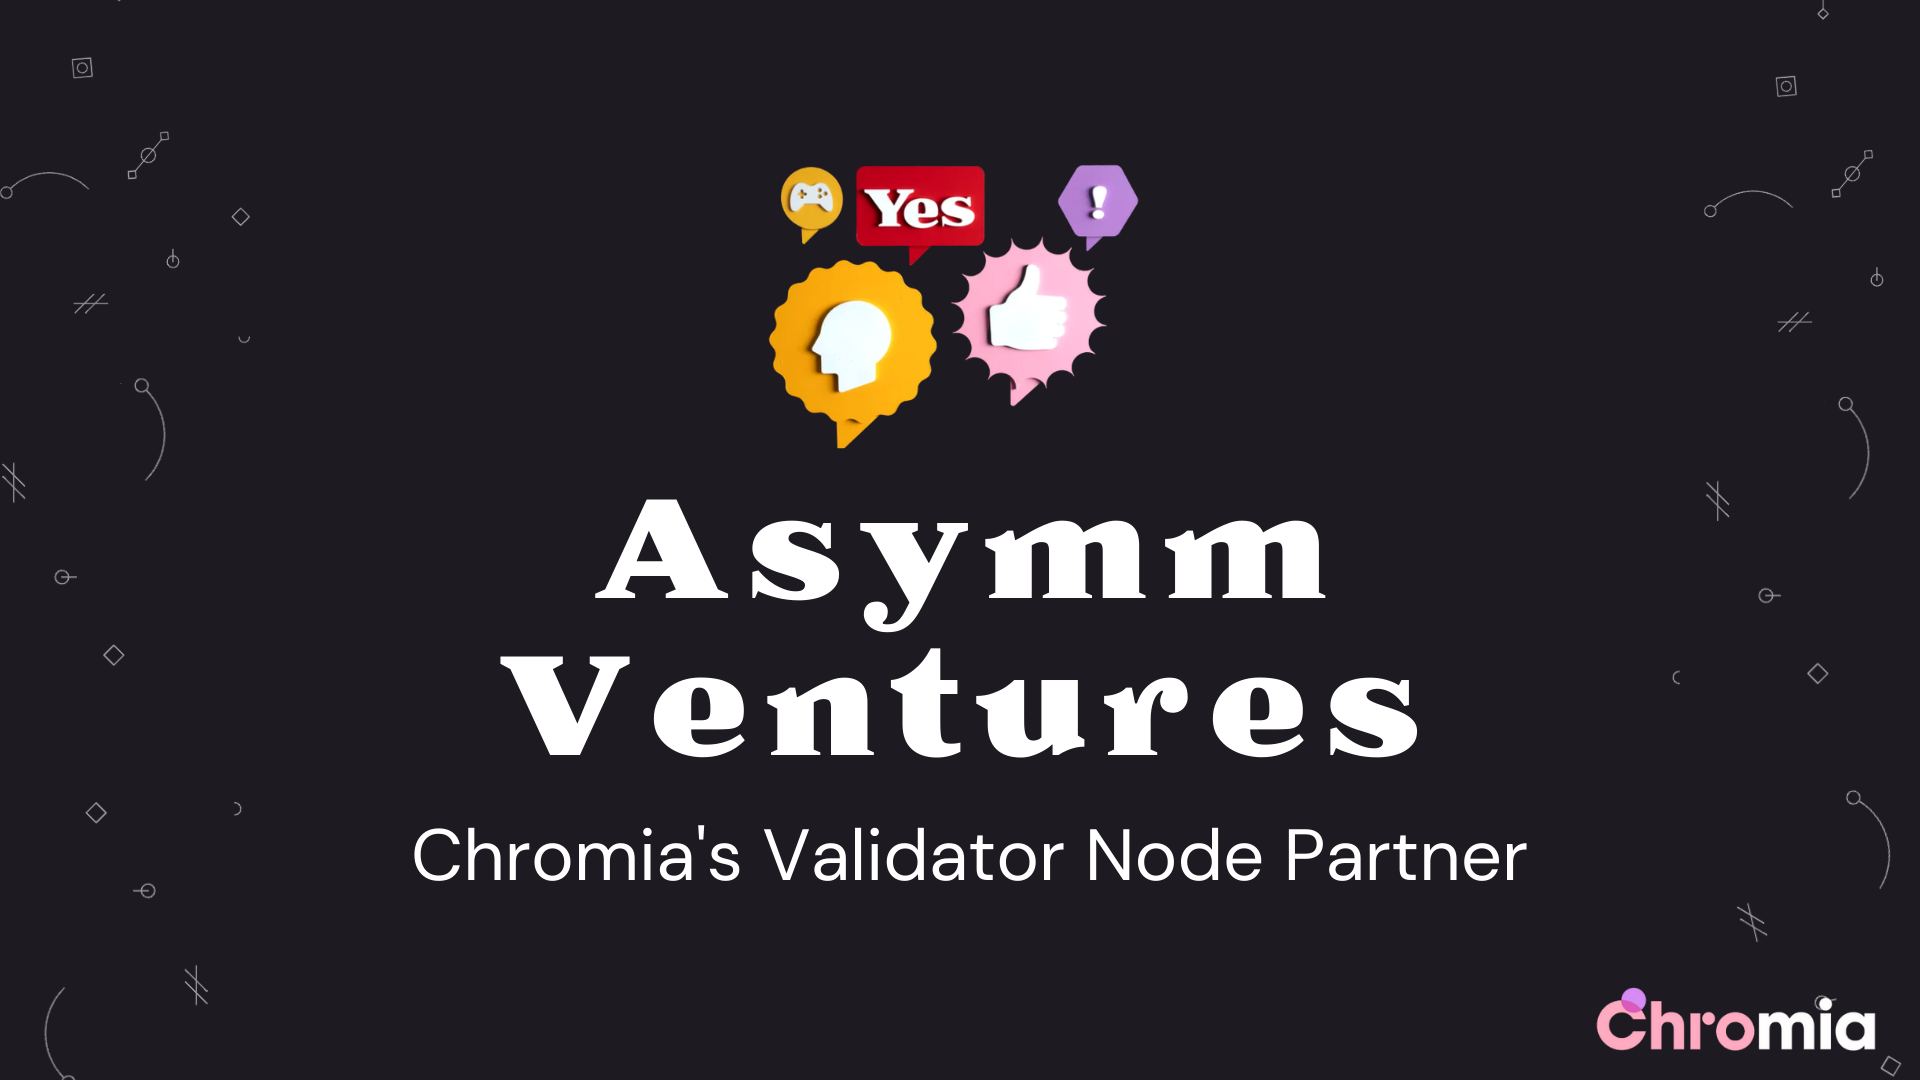 Chromia (CHR) công bố đối tác validator đầu tiên: Asymm Ventures